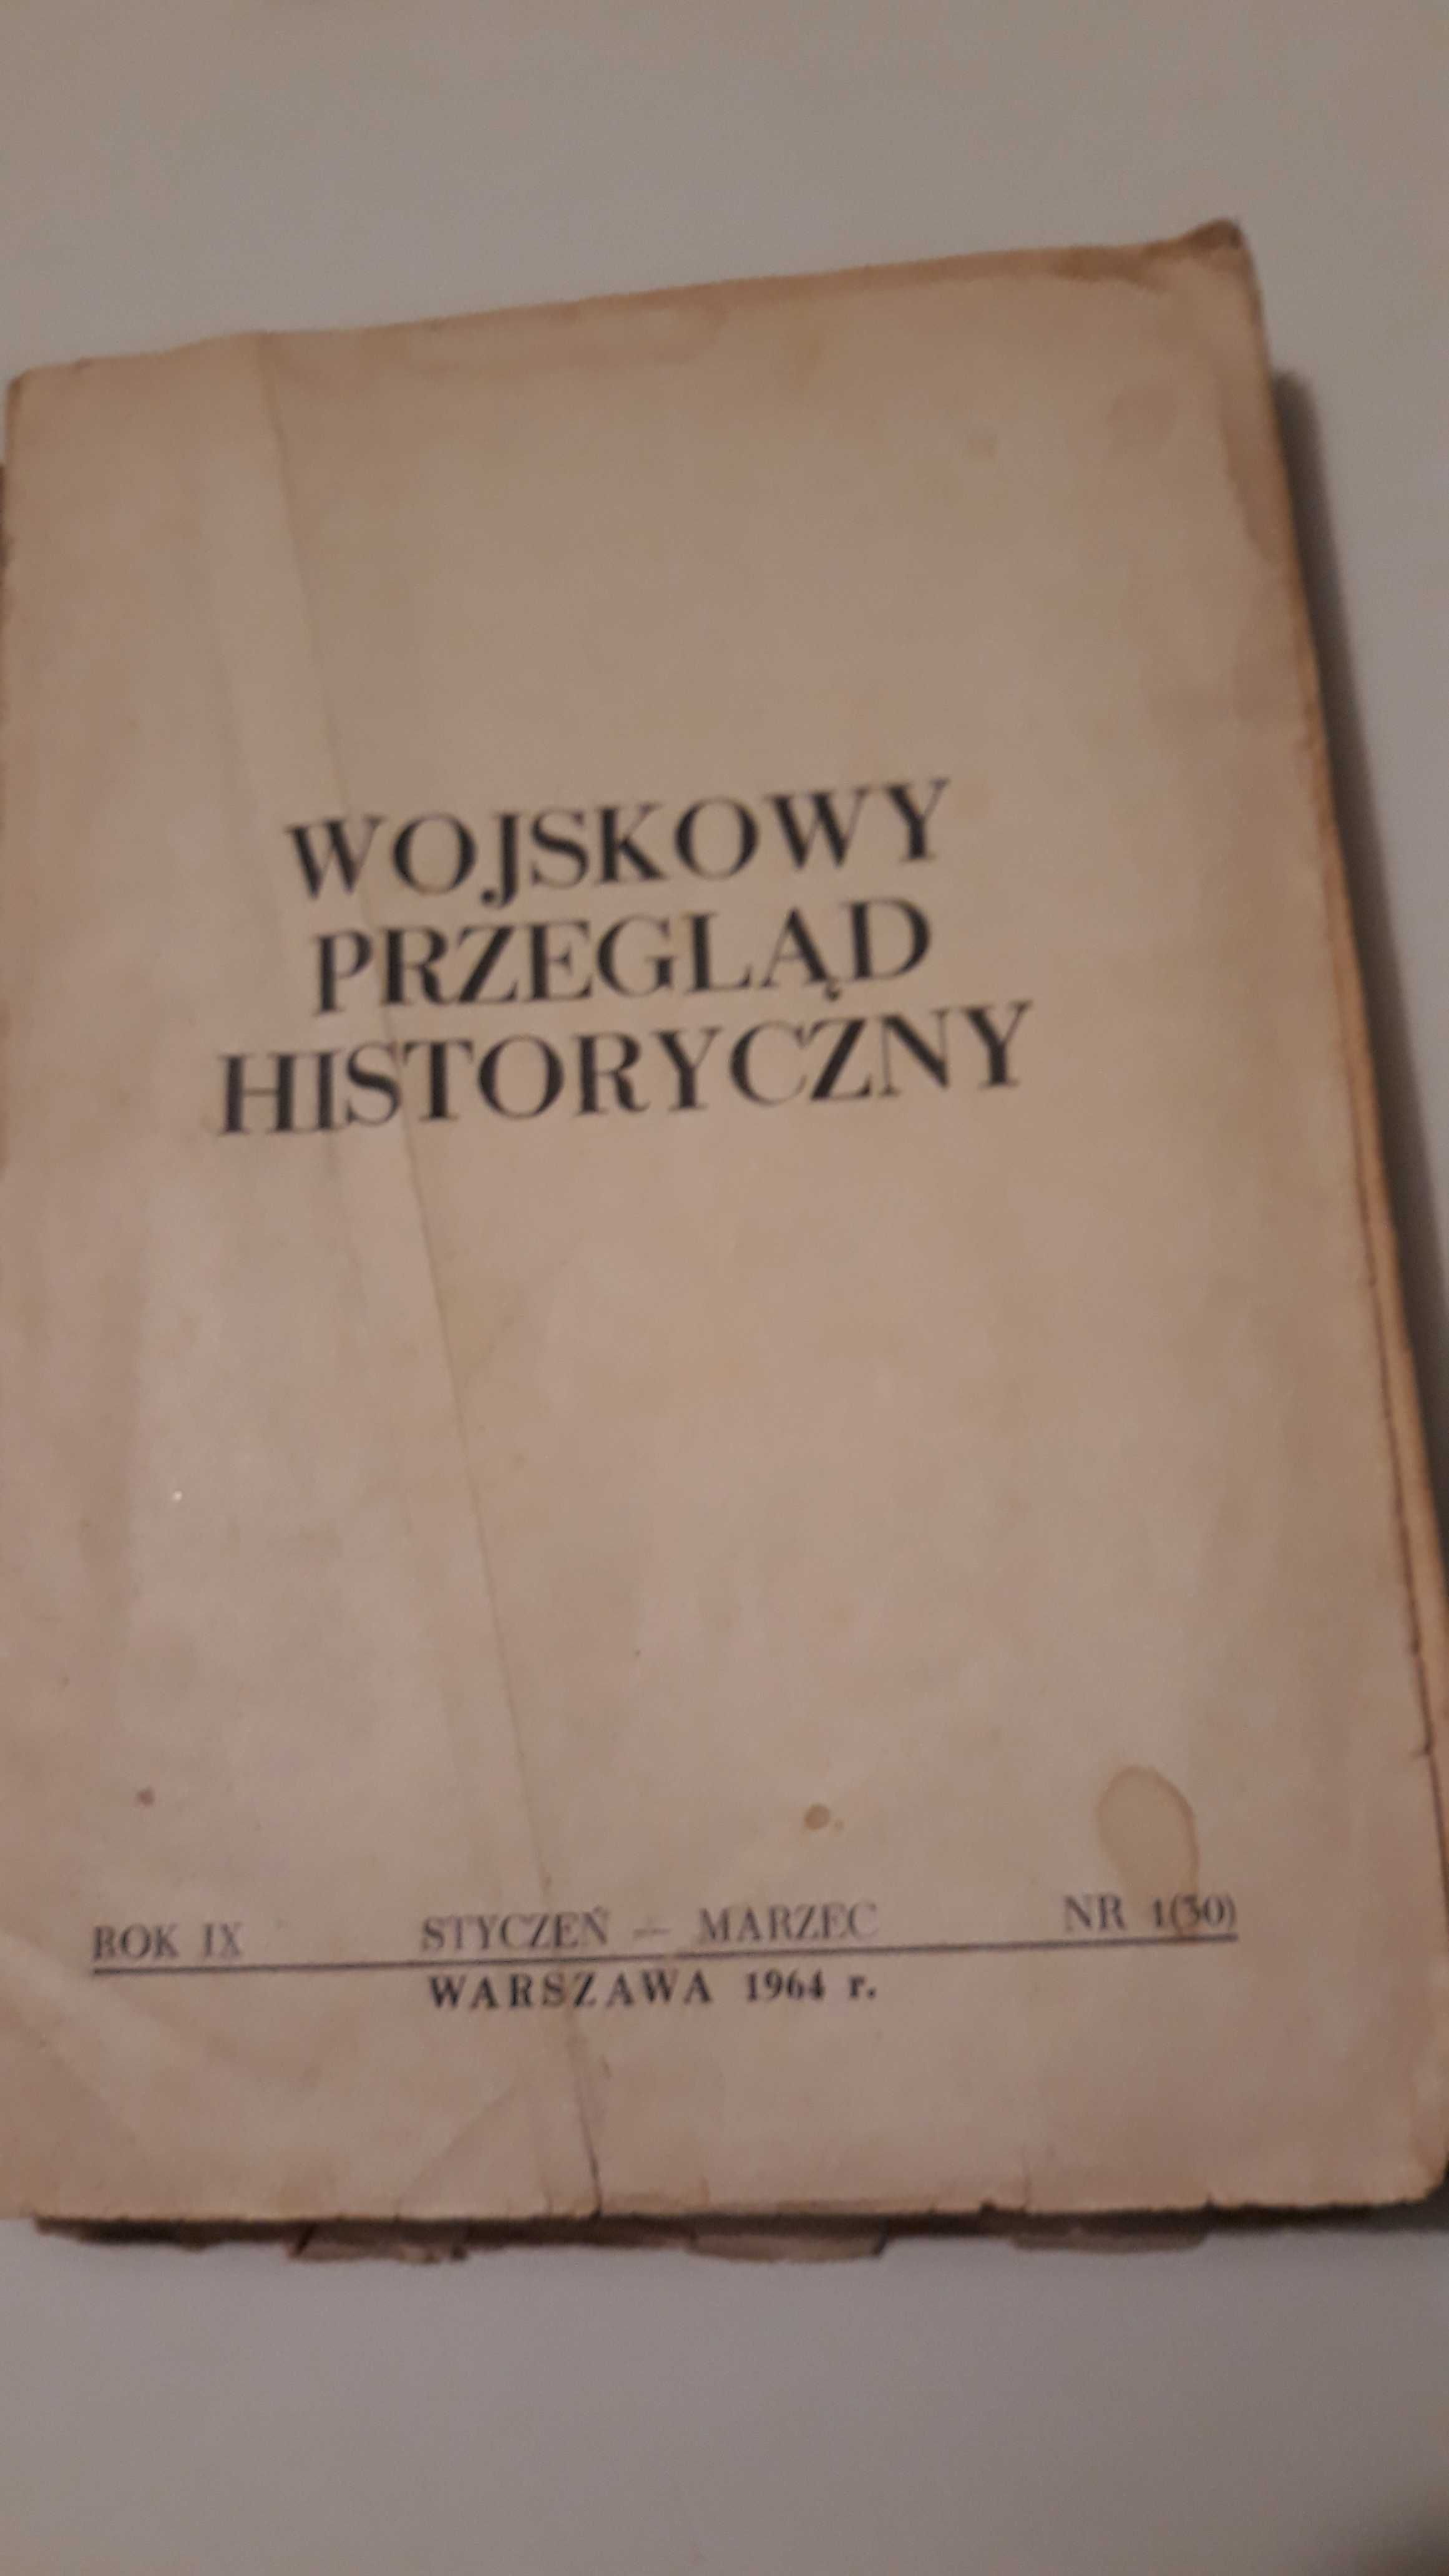 Wojskowy Przegląd Historyczny styczeń-marzec 1964 Nr 1(30)